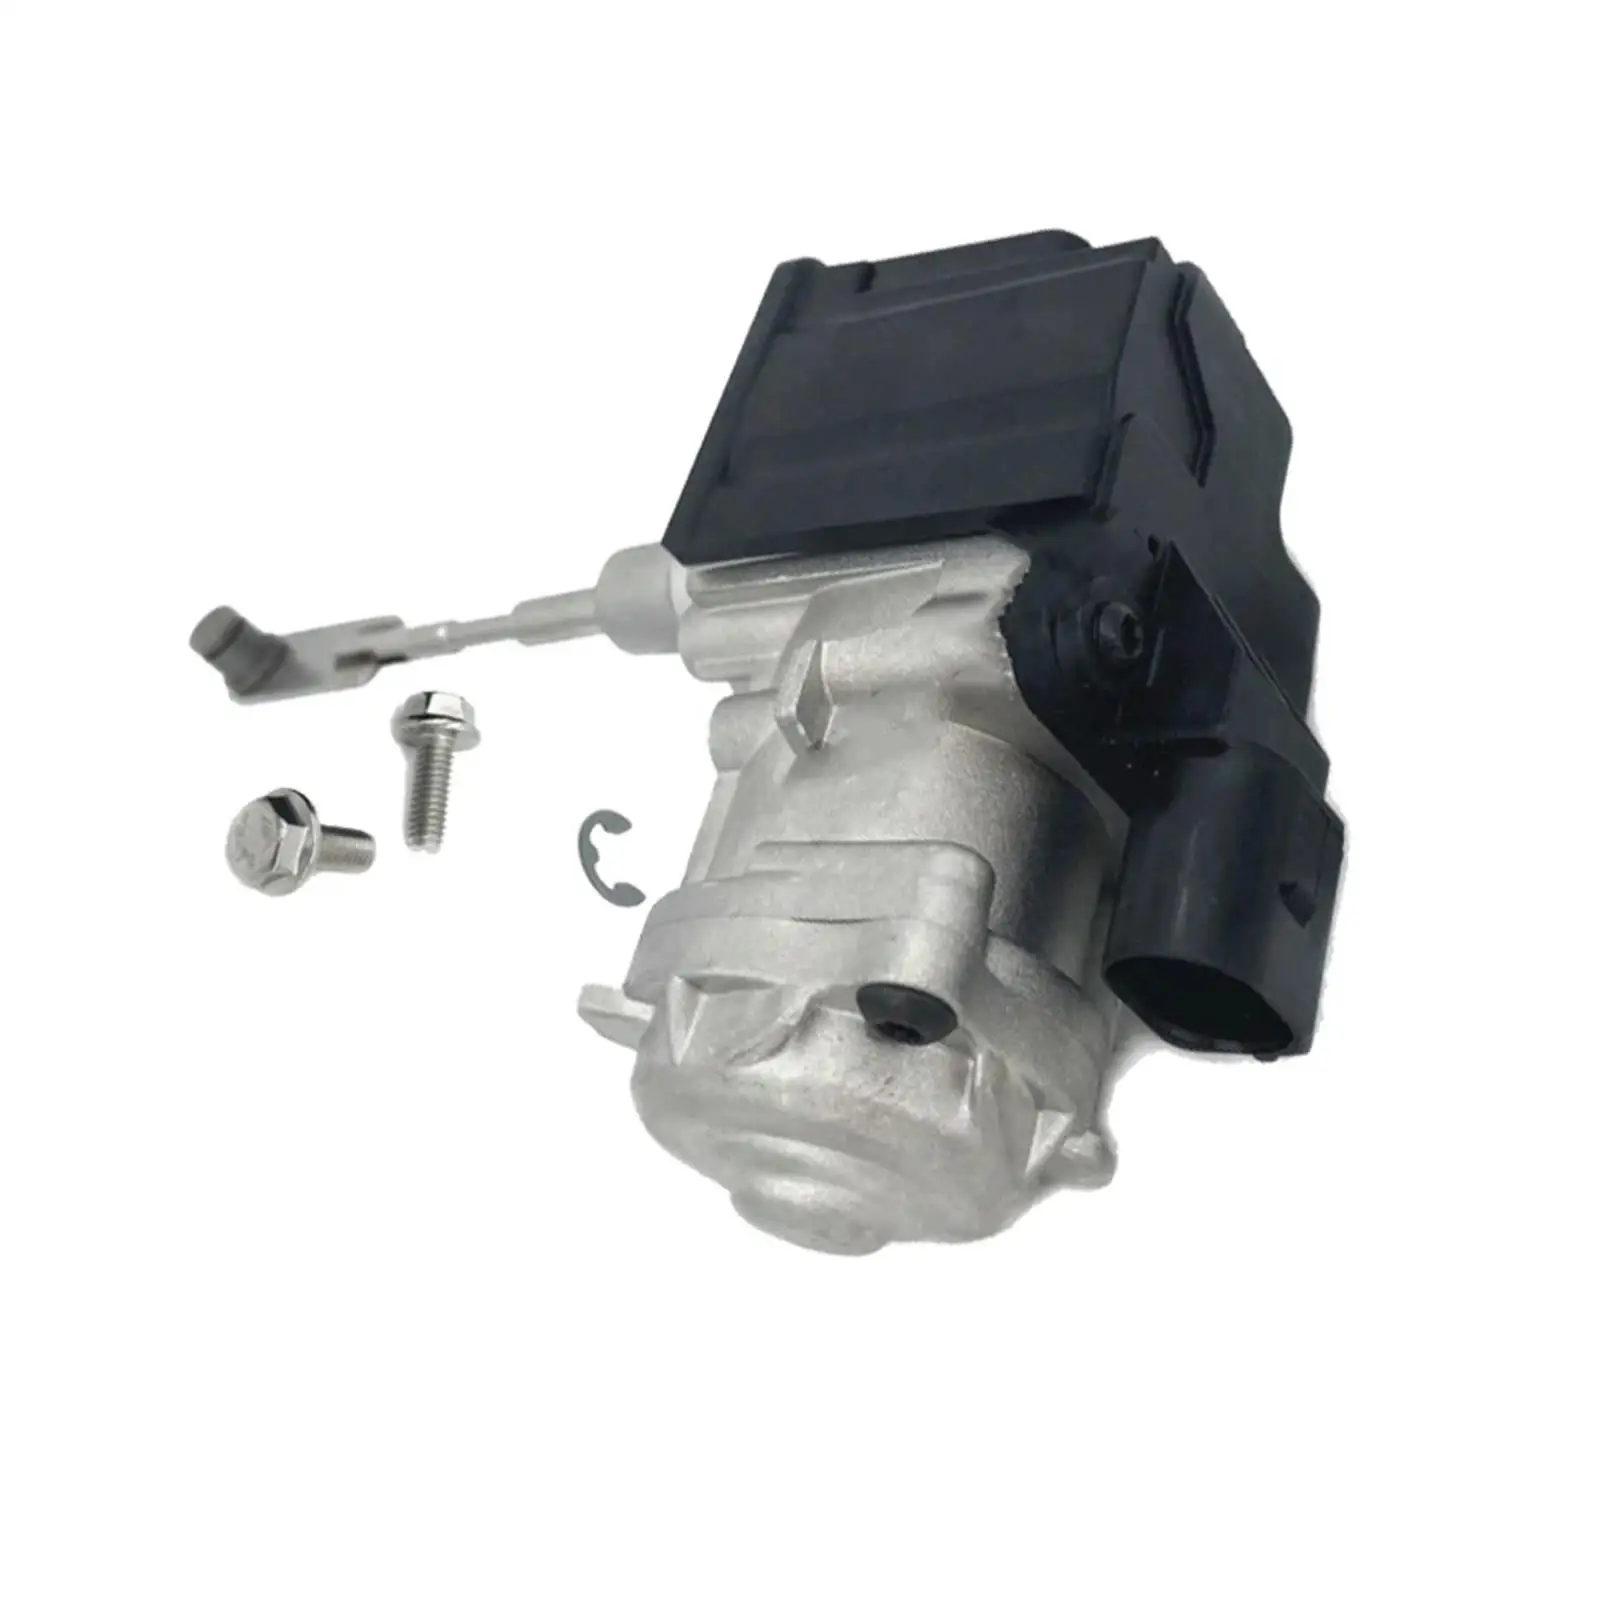 04E145725AK Replaces Durable Premium Engine Turbocharger Turbo Actuator Unit 04E145725Ab 04E145725AD for Audi A1 A3